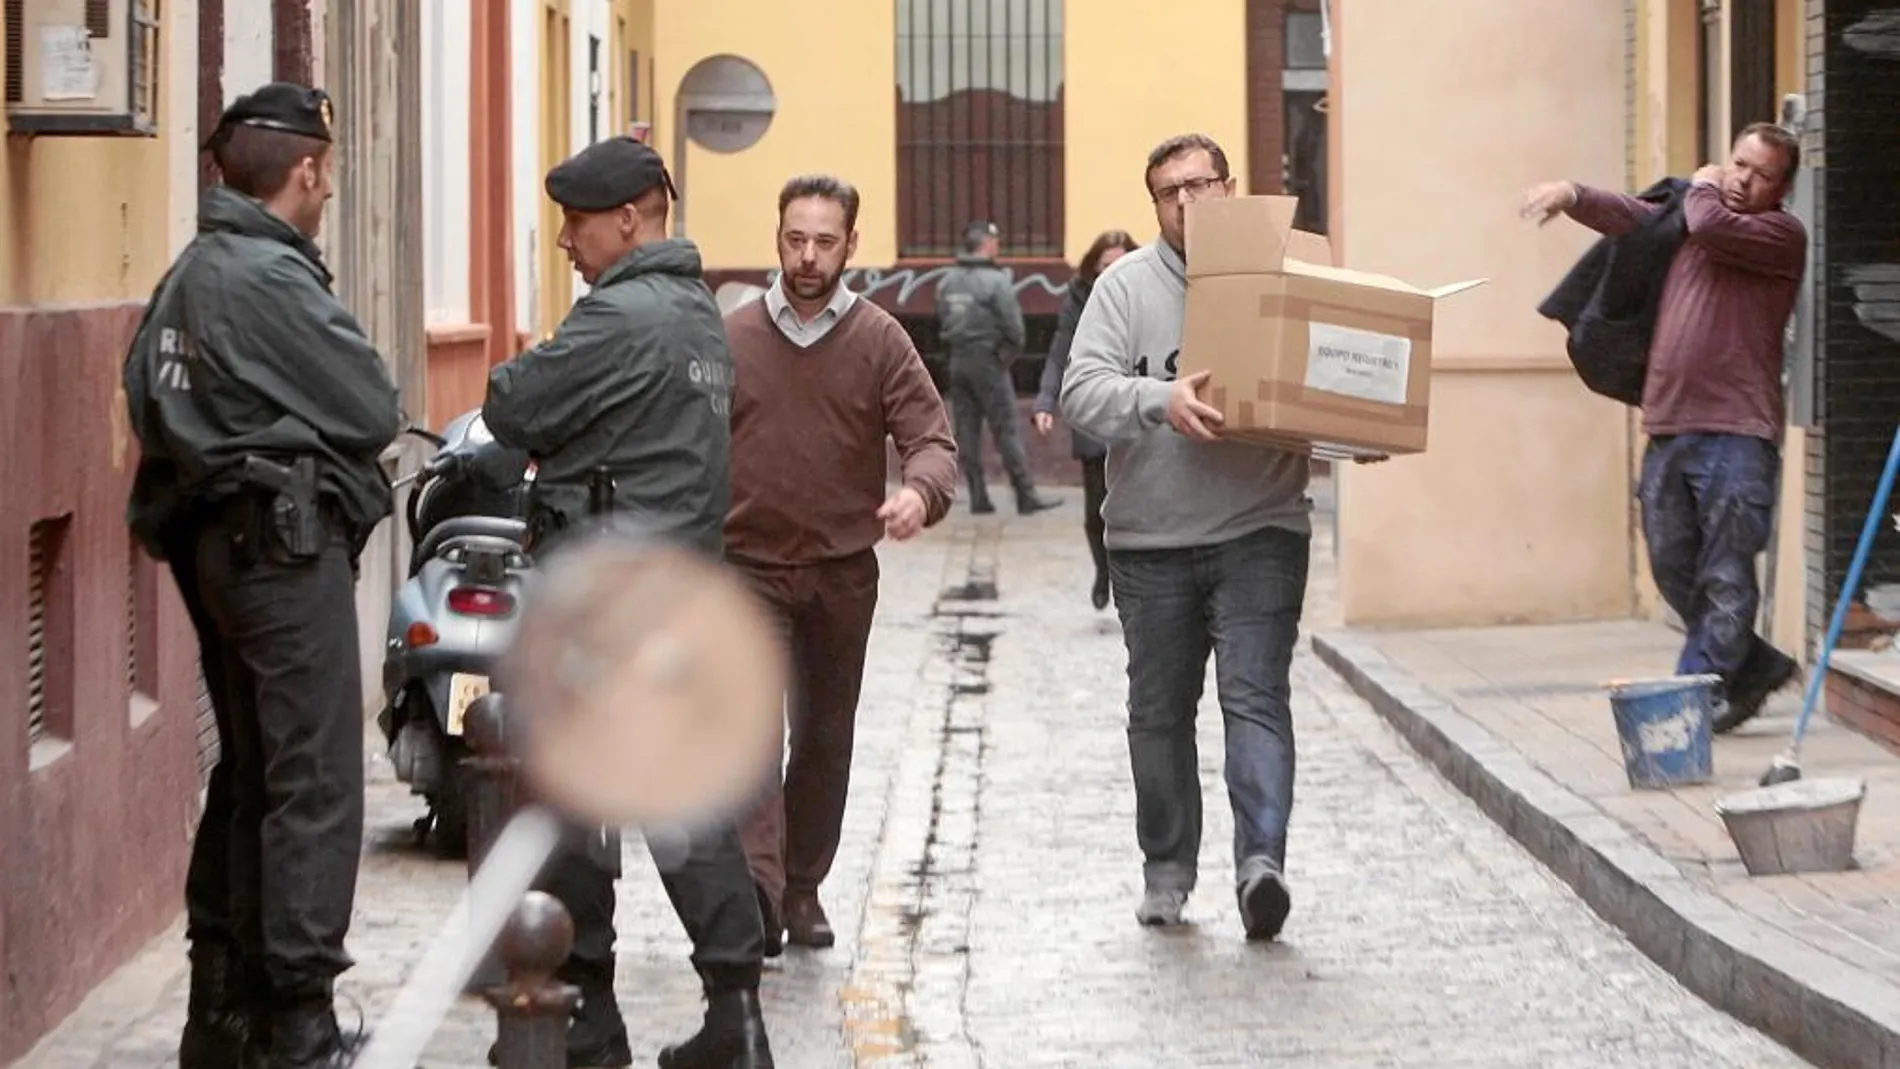 Imagen del registro que llevó a cabo la Guardia Civil en la sede de la UGT en Sevilla, realizado en diciembre del pasado año